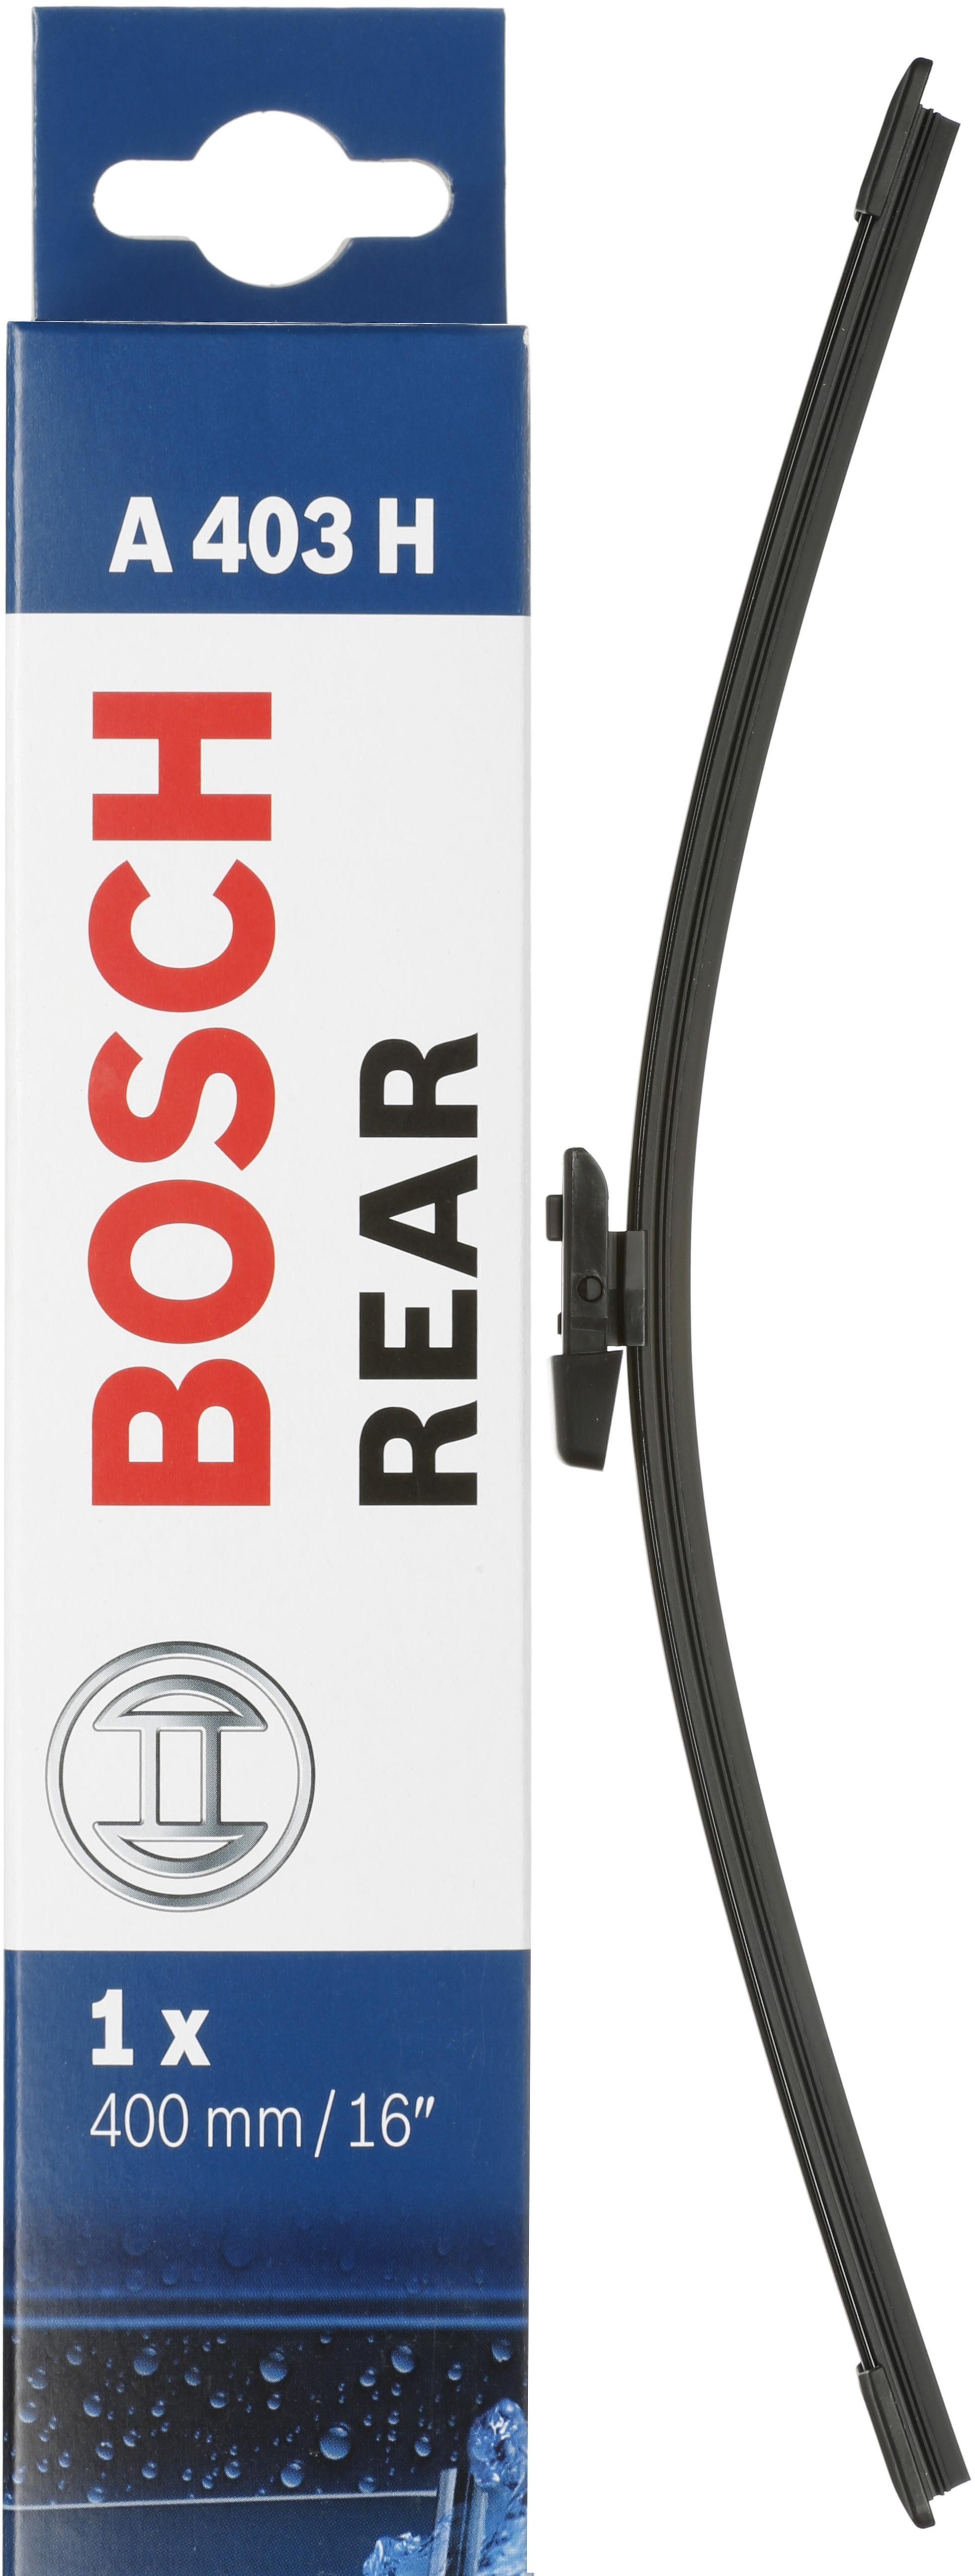 Bosch A403H Wiper Blade - Single